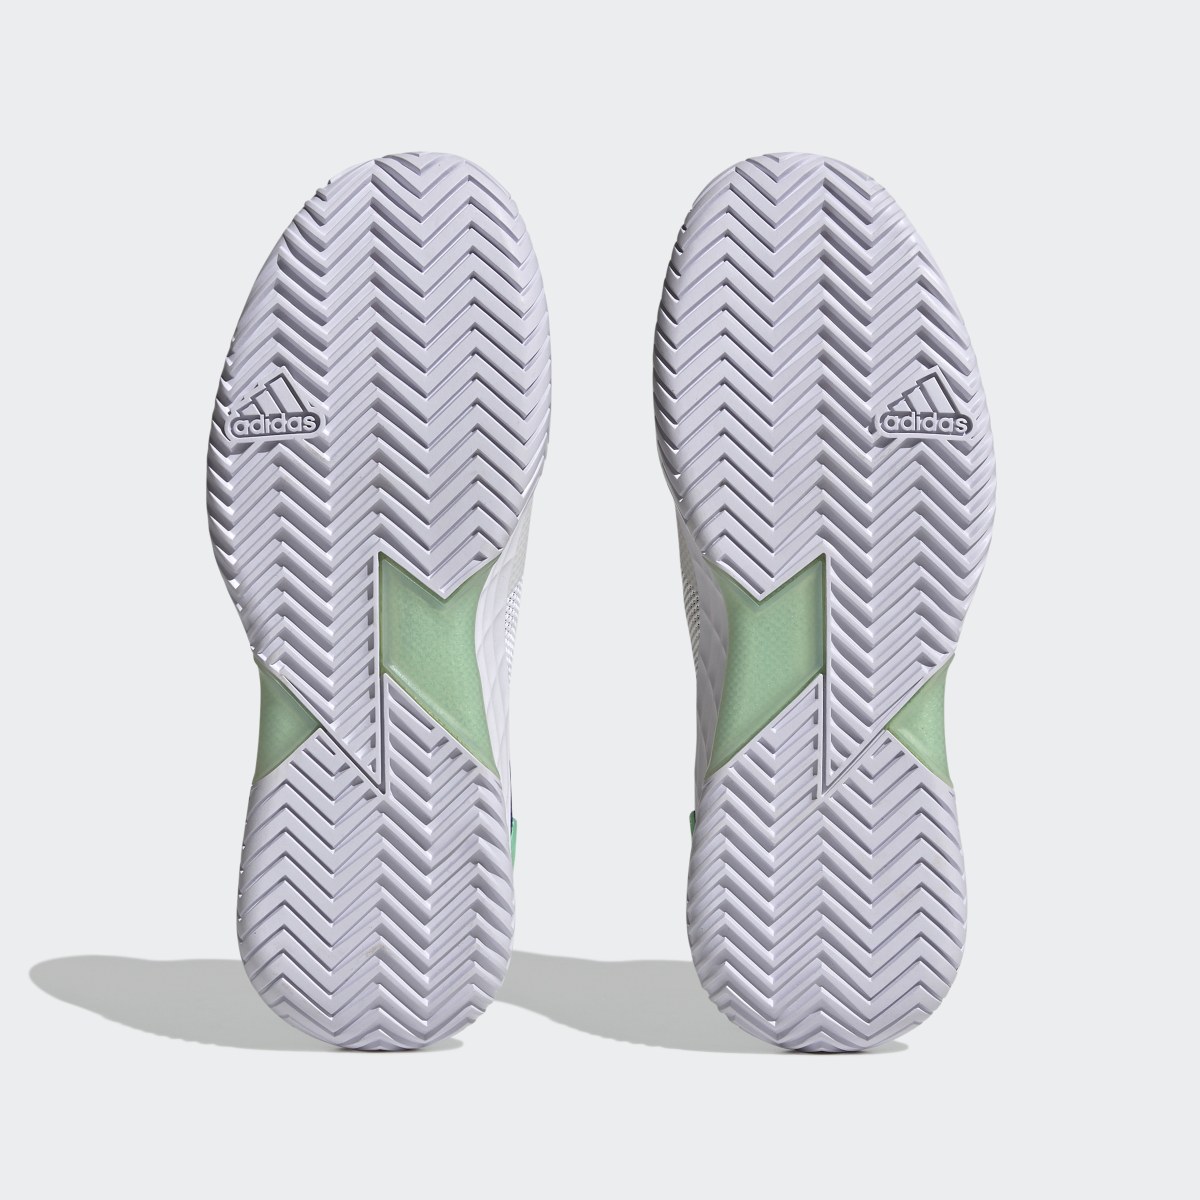 Adidas adizero Ubersonic 4 Tennis Shoes. 7